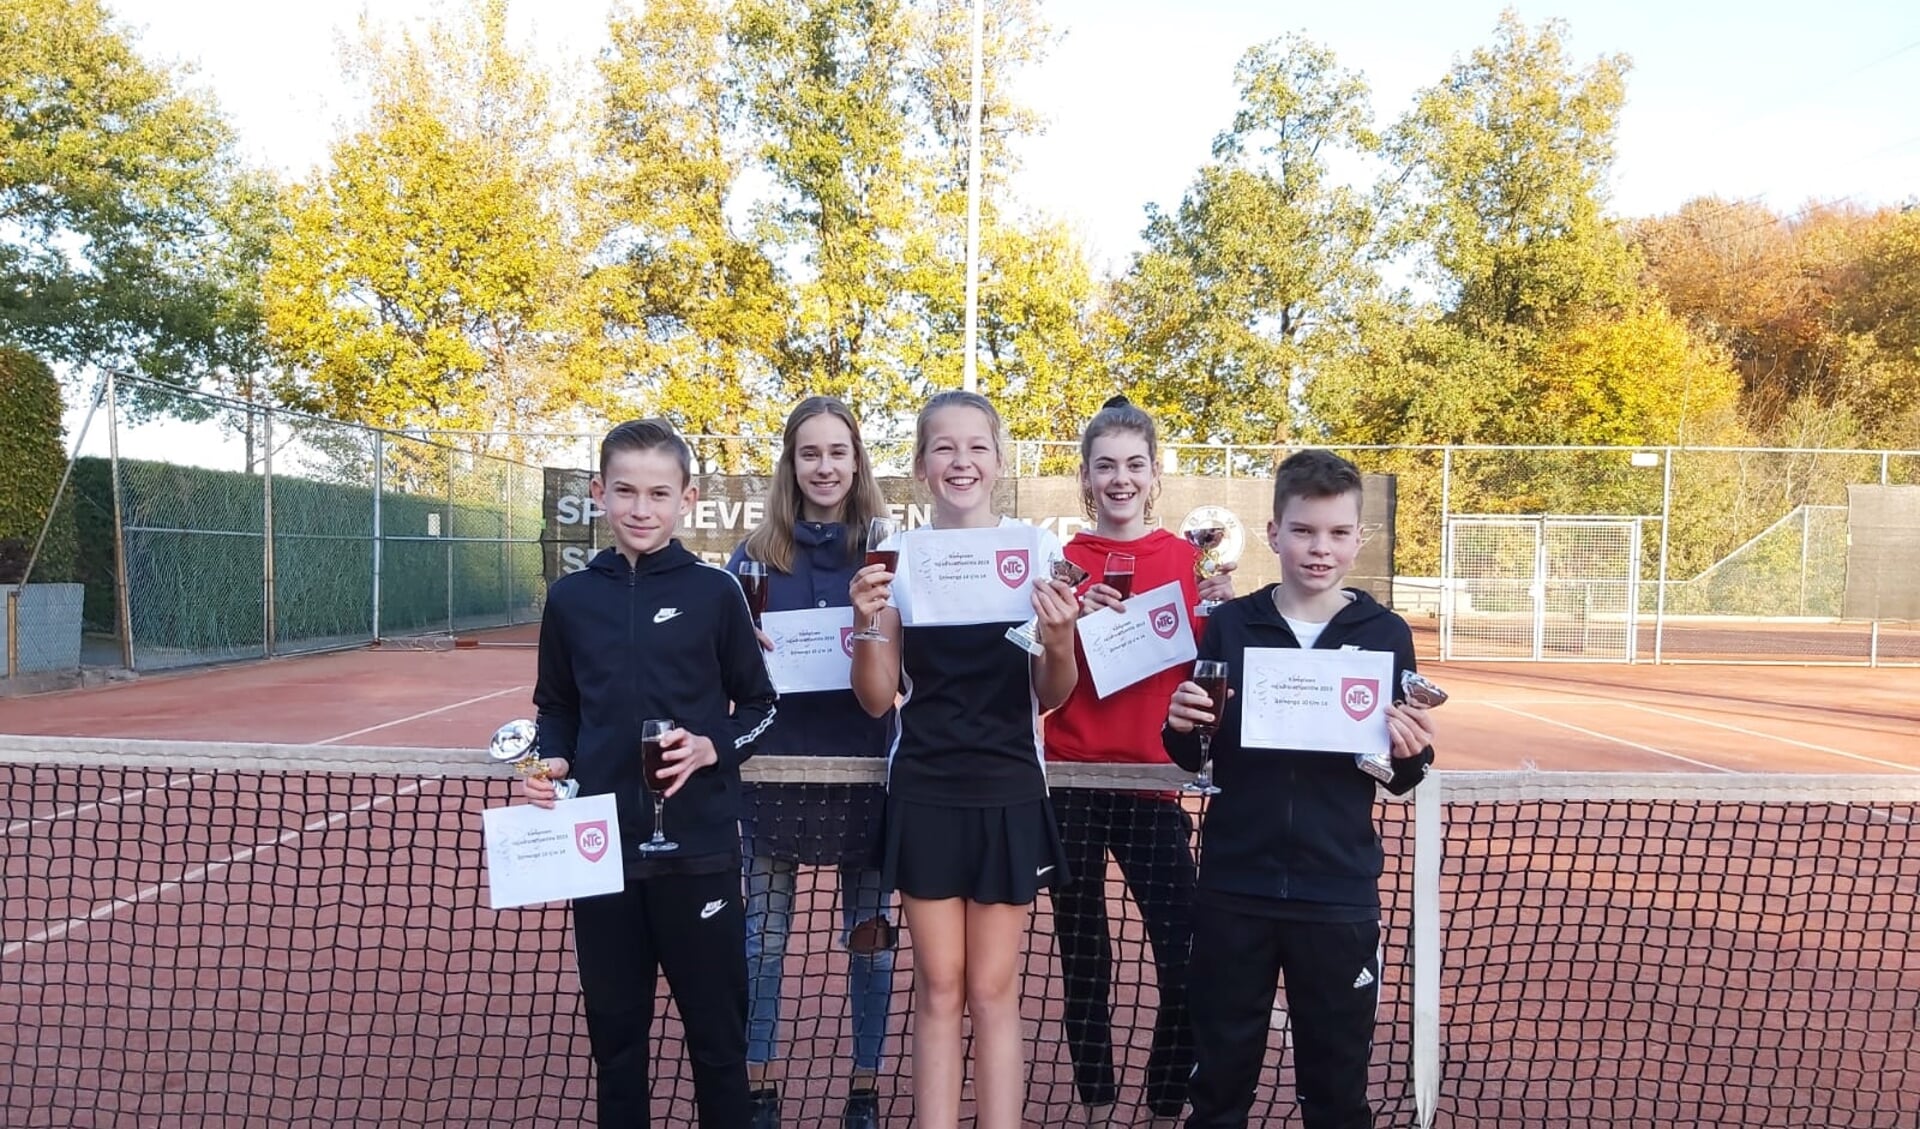 Jordy, Blom, Imme, Celine en Noud, de tennistalenten van het kampioensteam